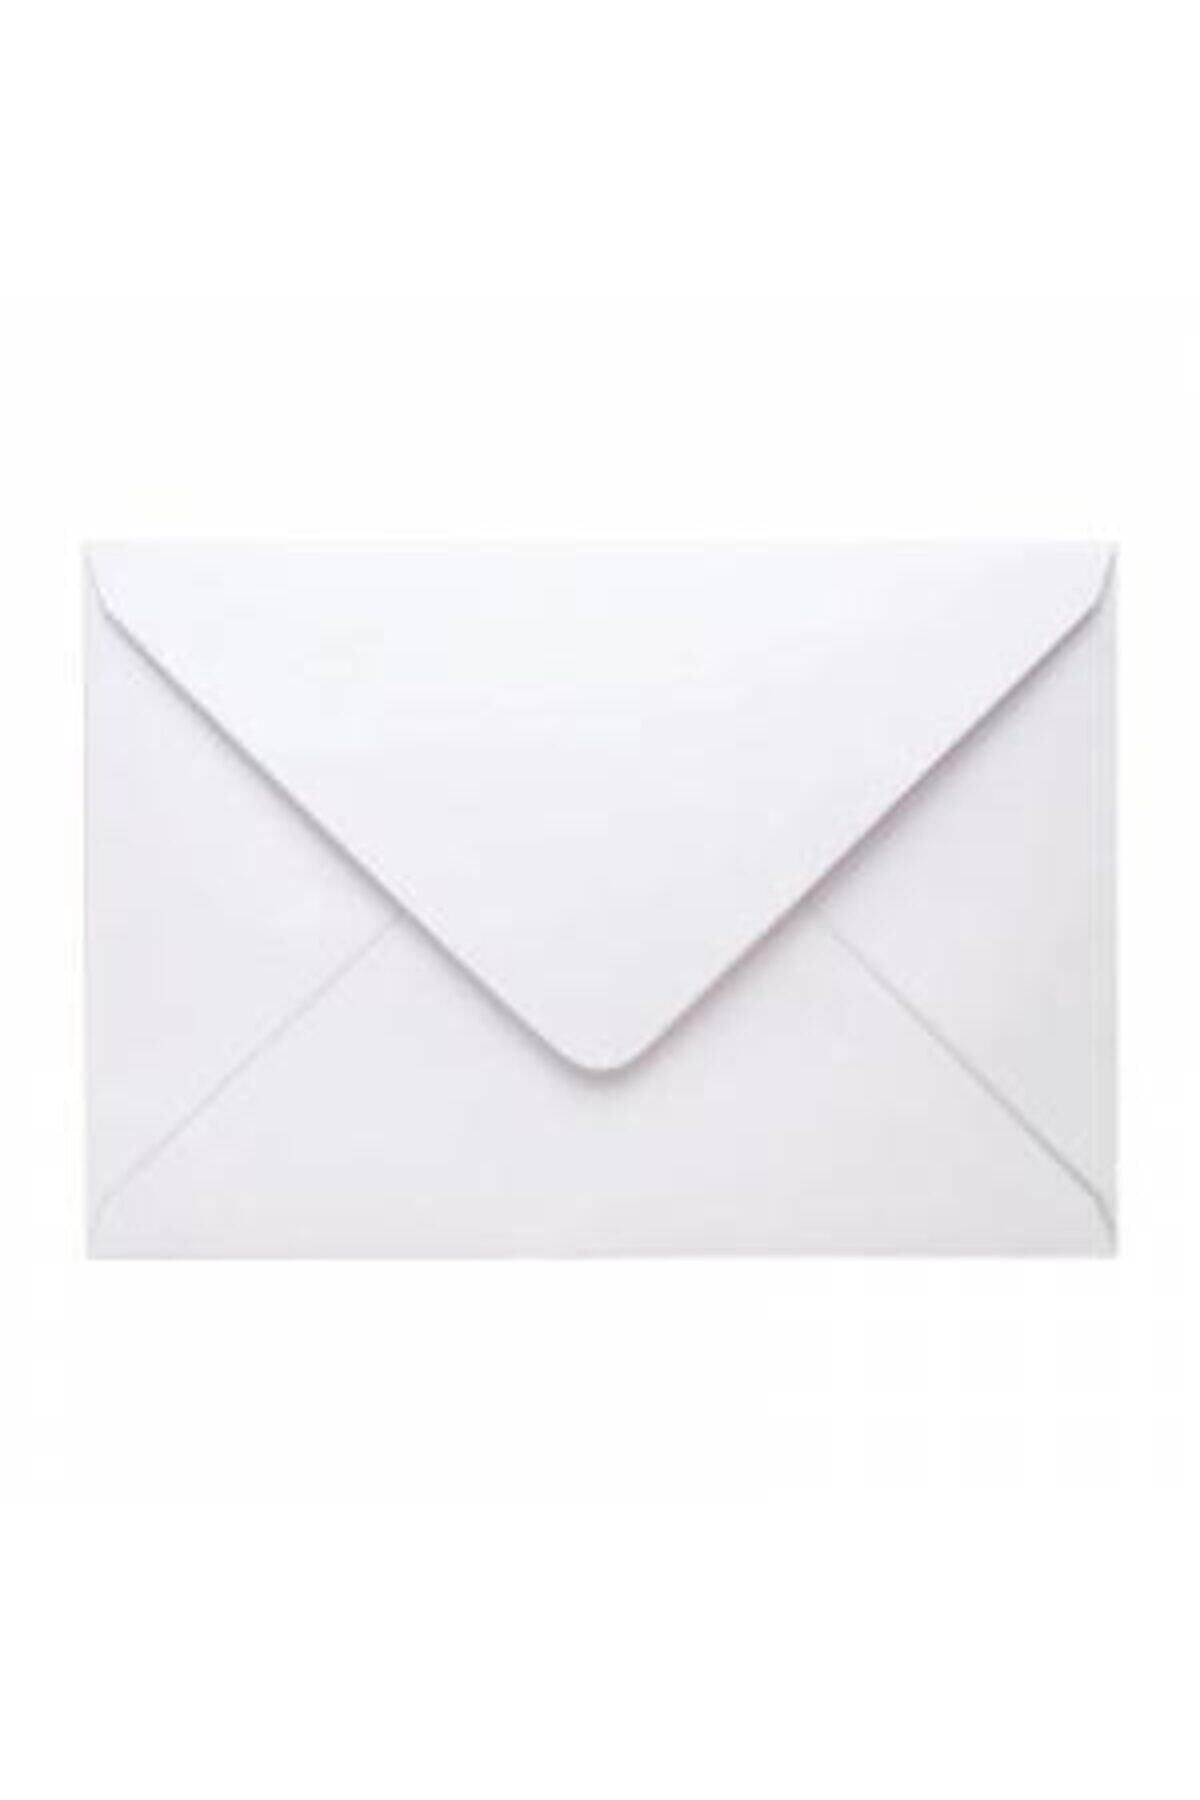 hırdawhat Kare Mektup Zarfı 11.4x16.2 Cm 70 Gram 500 Adet